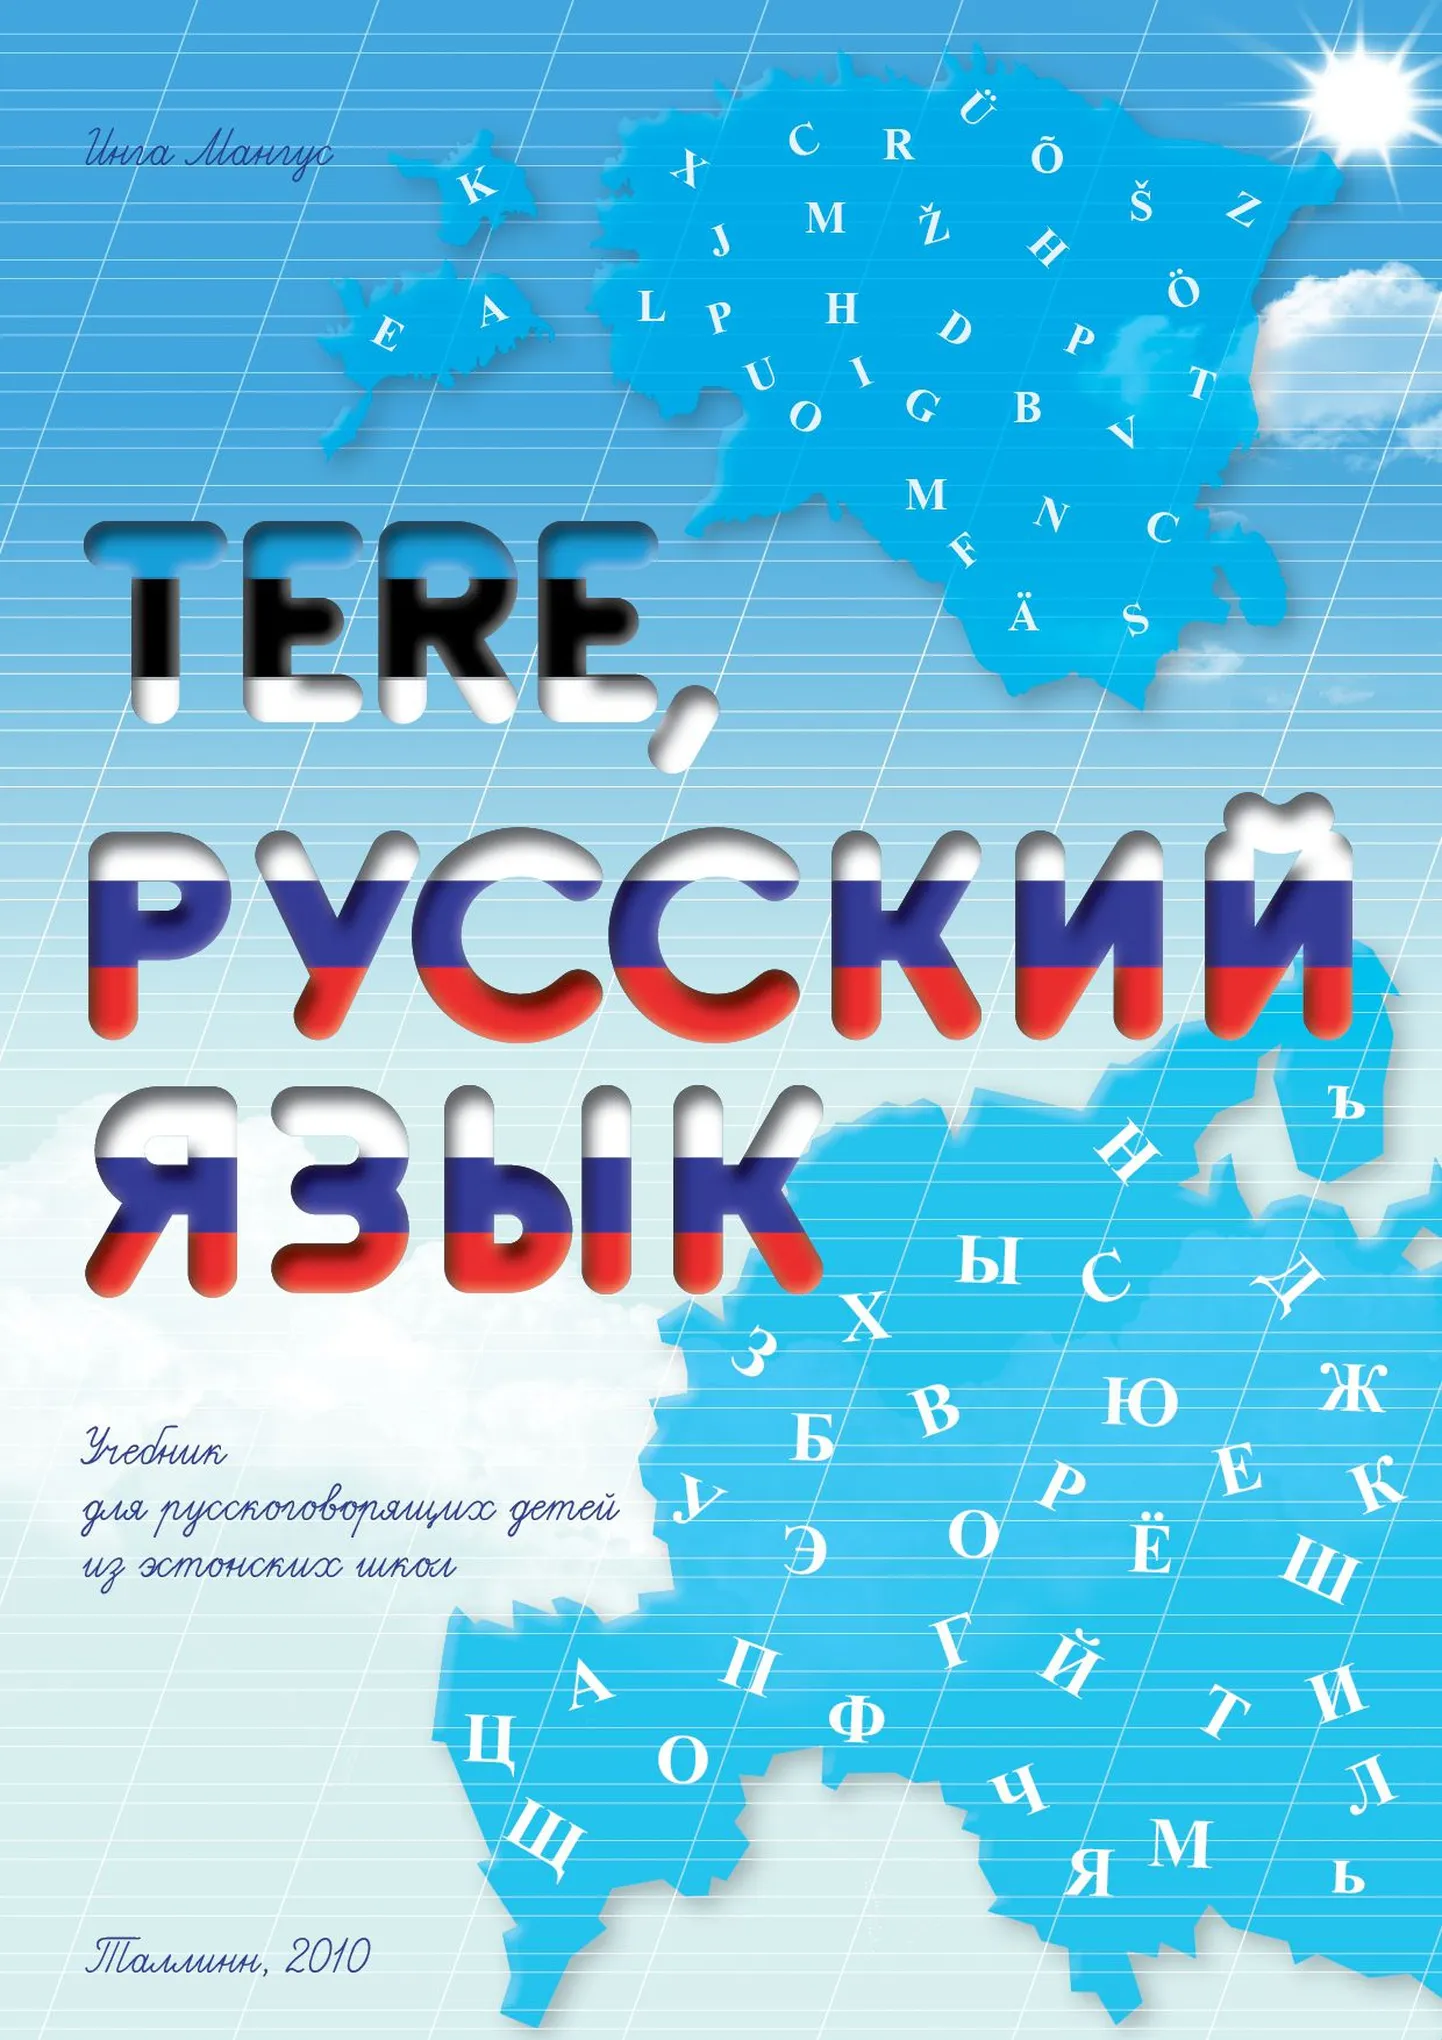 Учебник родного языка для русских учеников эстонских школ.